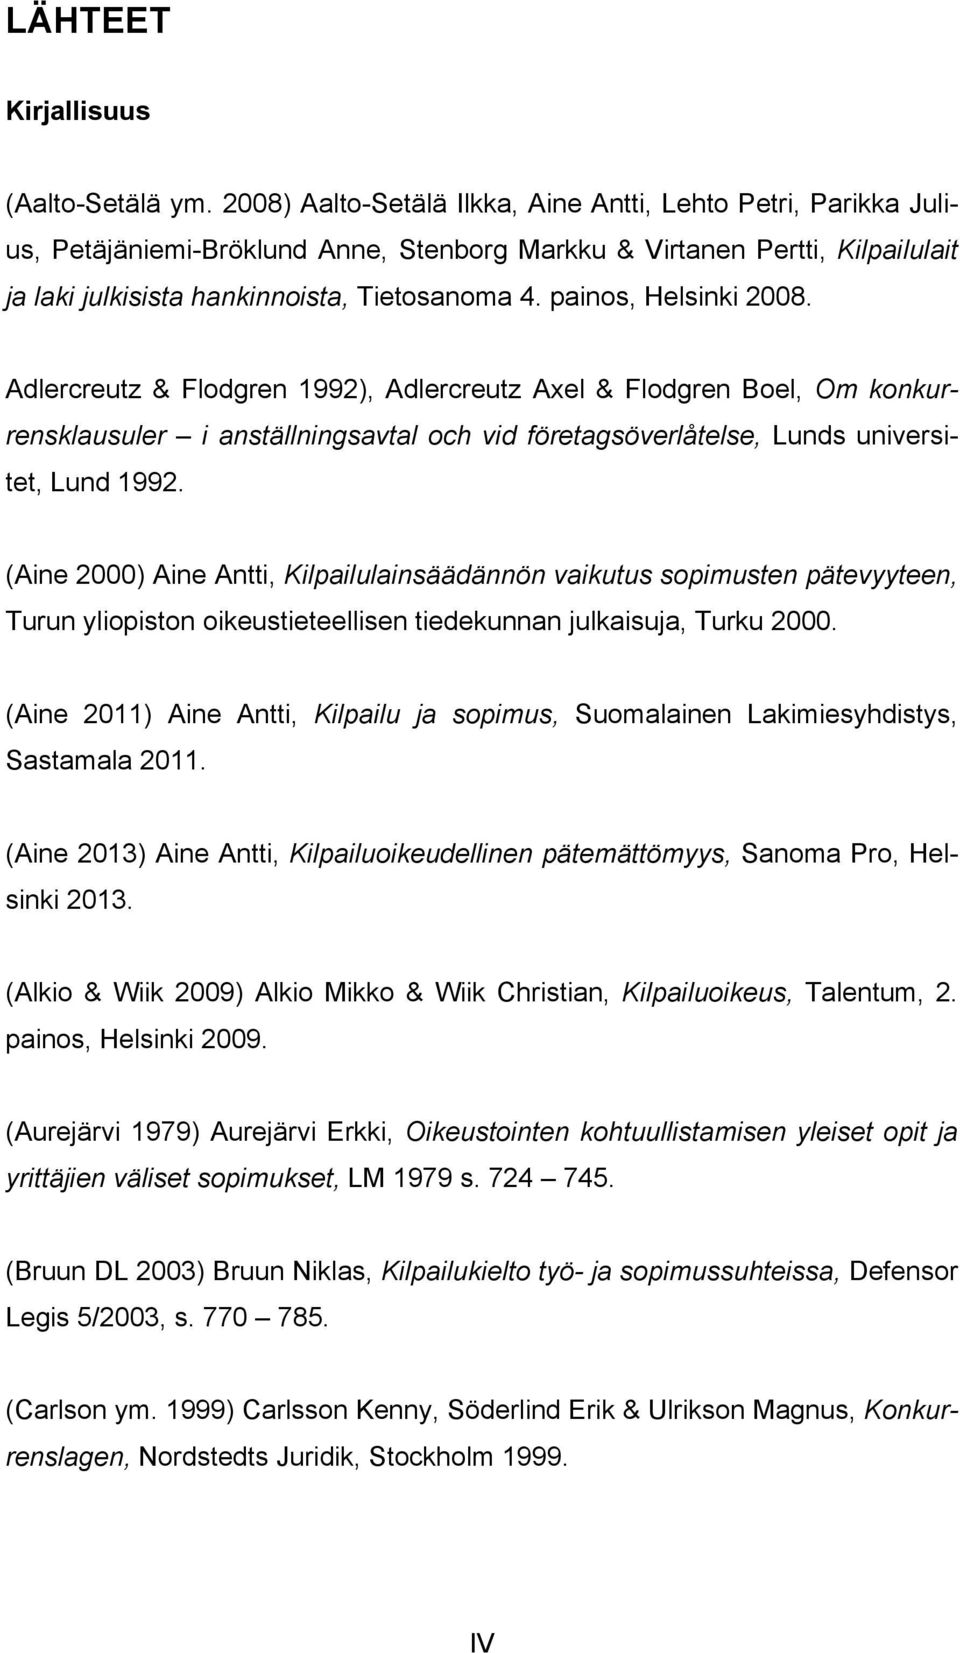 painos, Helsinki 2008. Adlercreutz & Flodgren 1992), Adlercreutz Axel & Flodgren Boel, Om konkurrensklausuler i anställningsavtal och vid företagsöverlåtelse, Lunds universitet, Lund 1992.